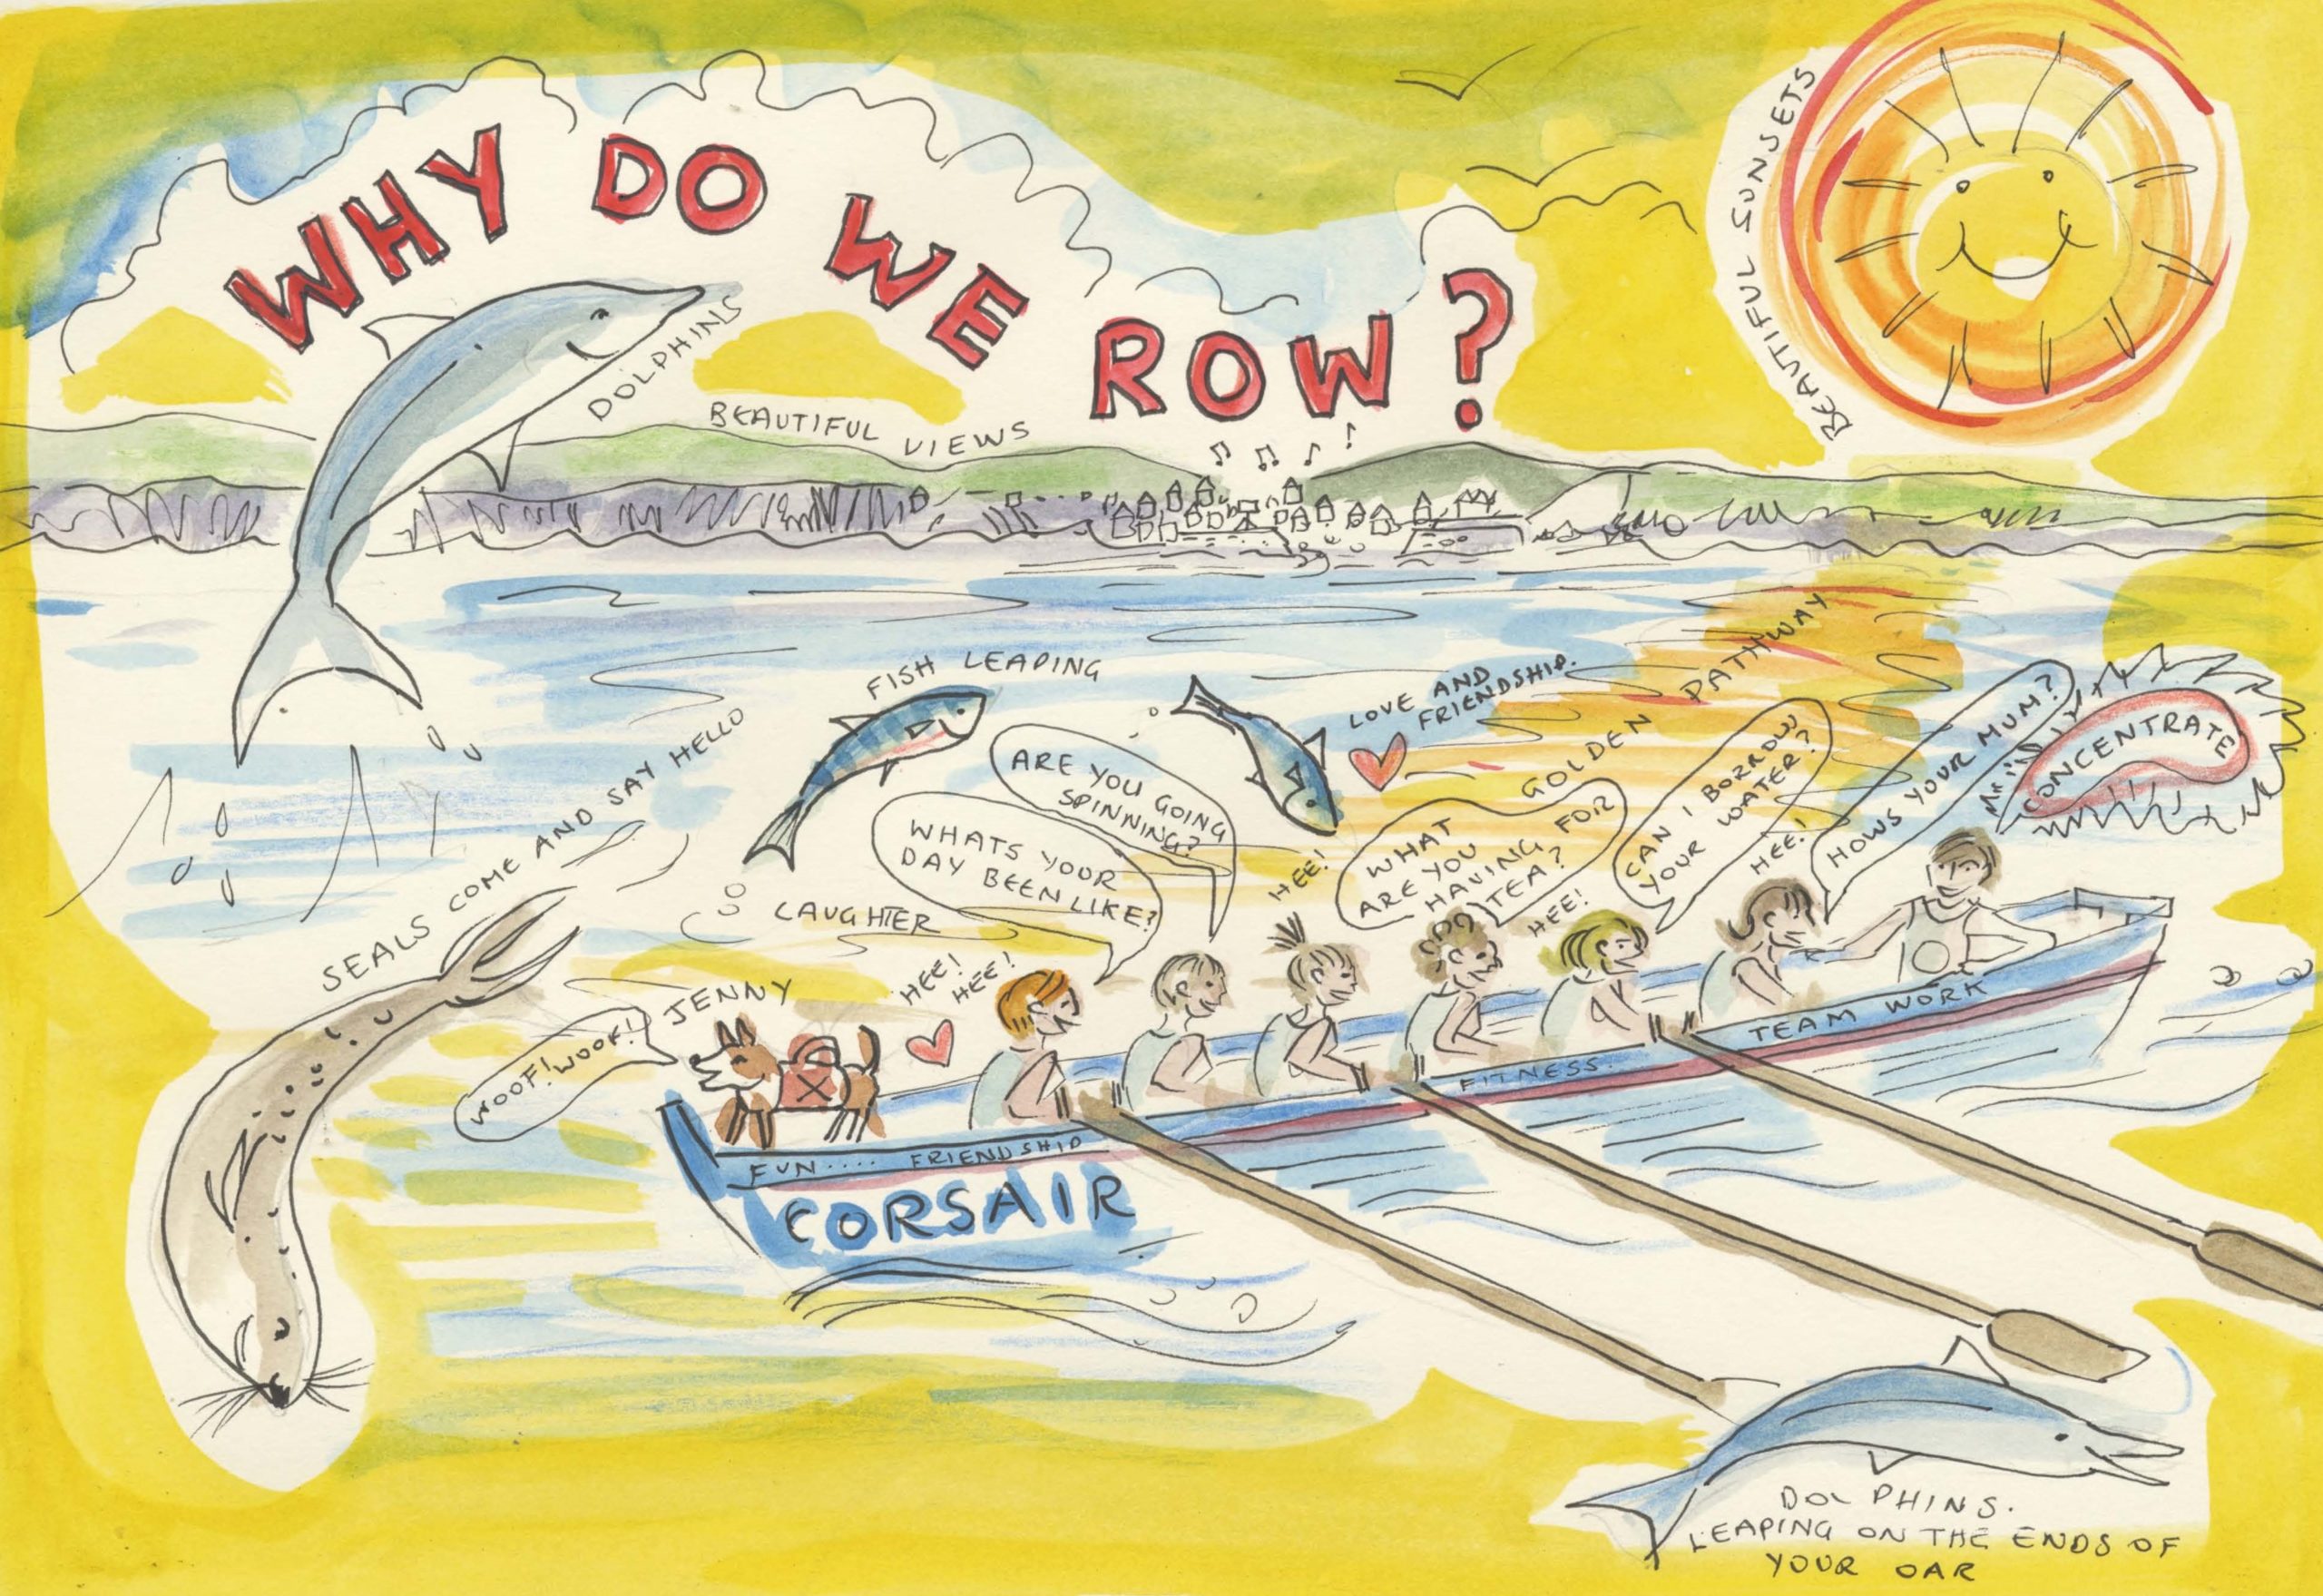 Why do we row